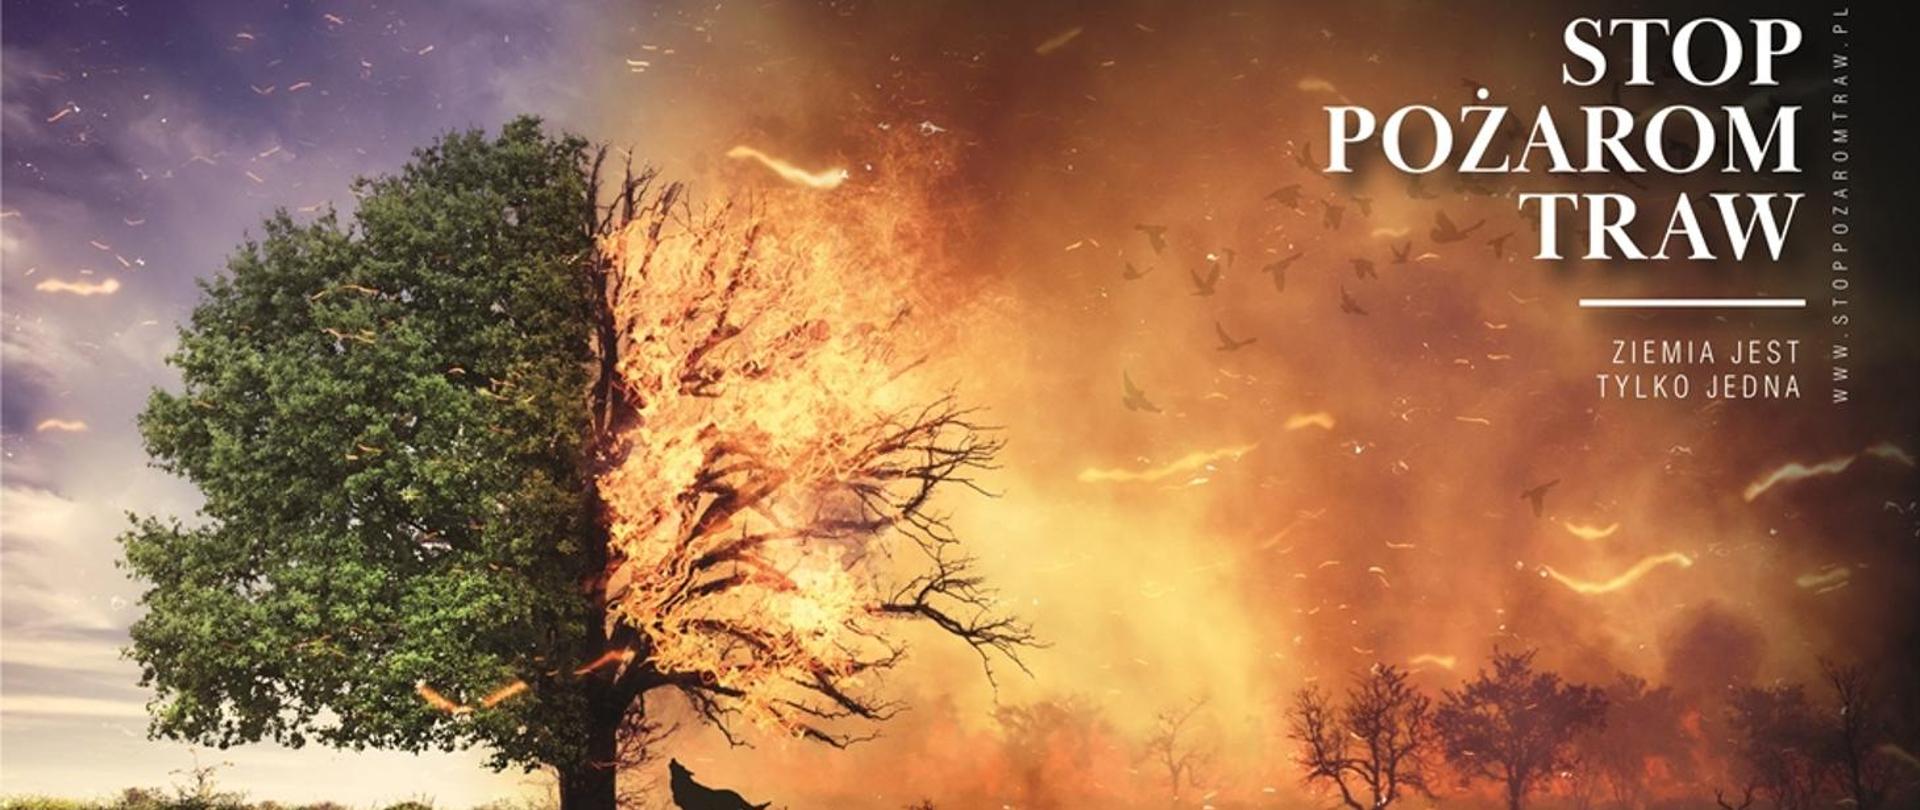 Na zdjęciu znajduje się w połowie spalone drzewo w górnym narożniku po prawej stronie napisy: Stop Pożarom Traw, Ziemia jest tylko jedna, www.stoppozaromtraw.pl